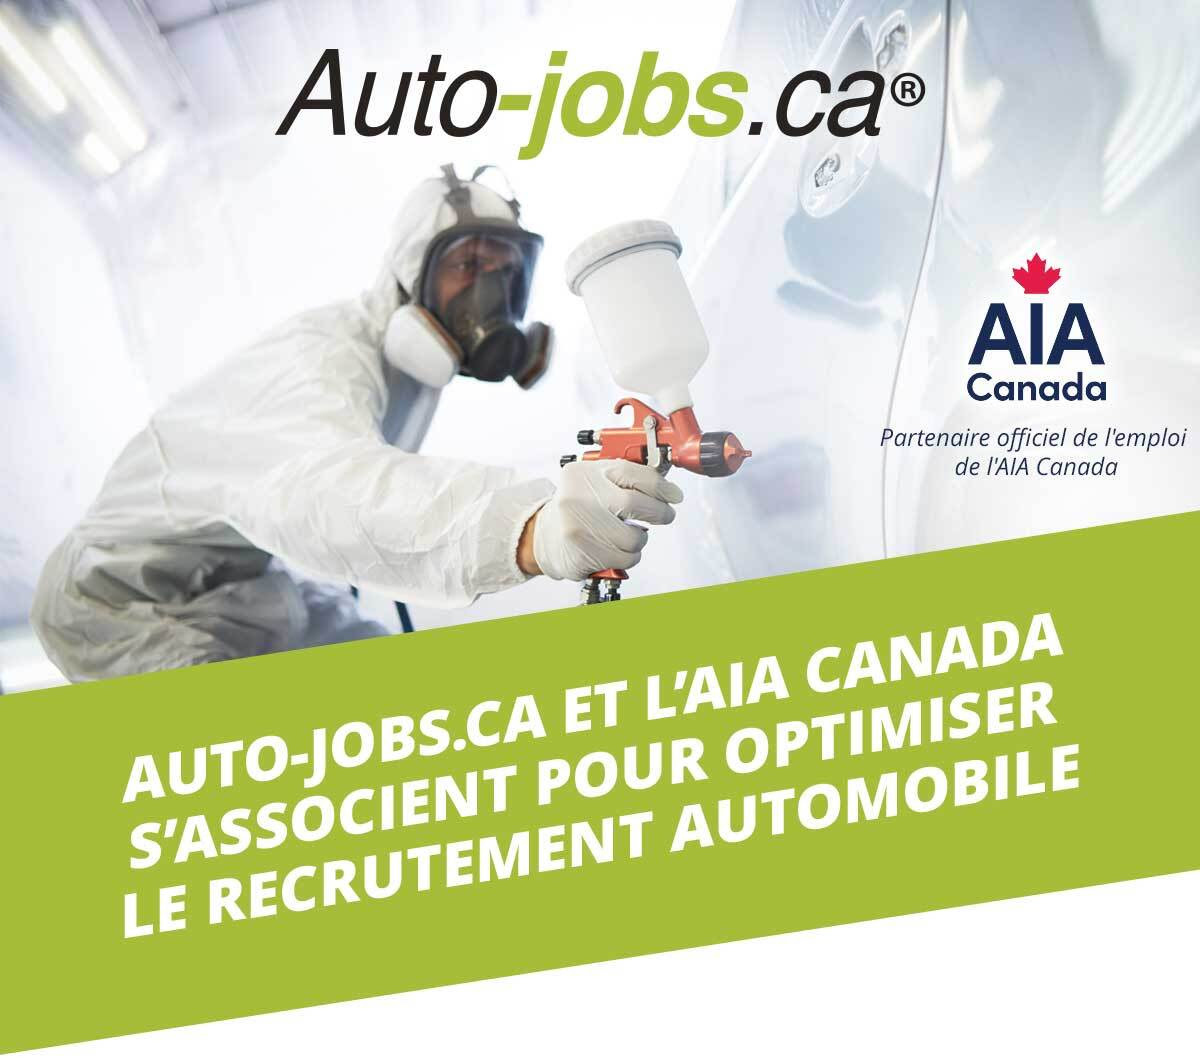 Auto-jobs.ca et l’AIA Canada s’associent pour optimiser le recrutement automobile